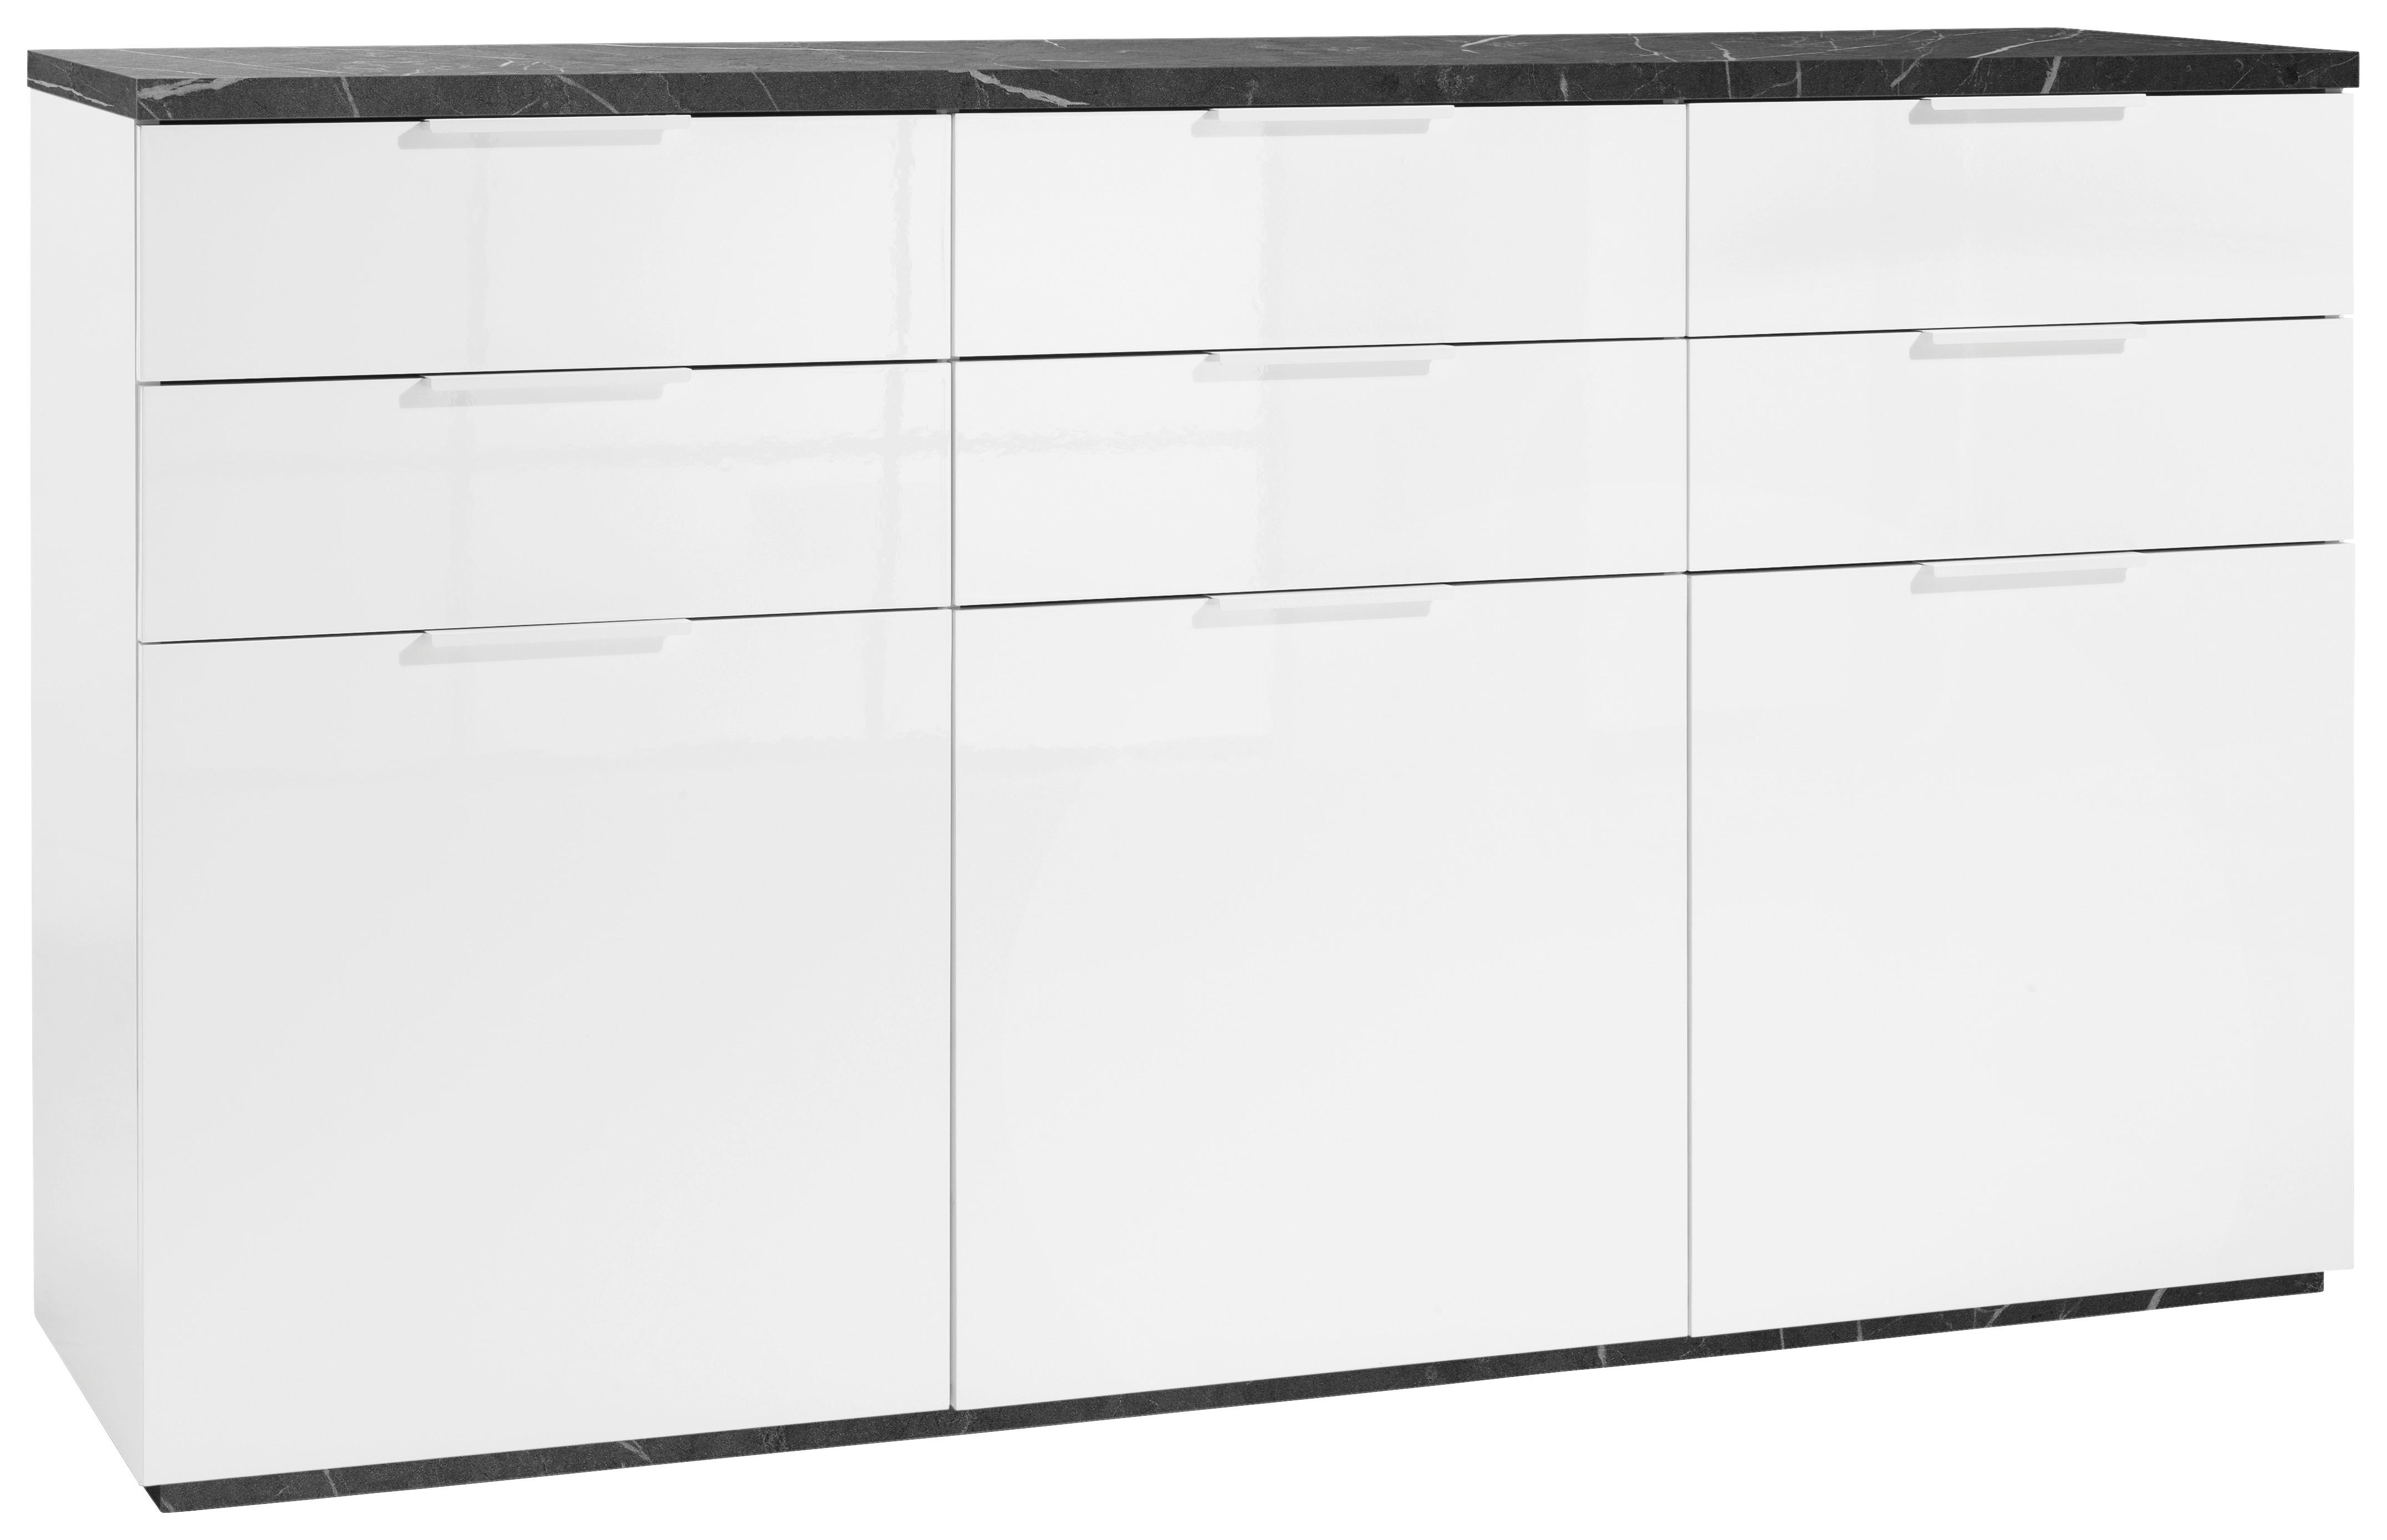 Sideboard in Anthrazit/Weiß - Anthrazit/Weiß, MODERN, Holzwerkstoff/Metall (180/102/50cm) - Premium Living